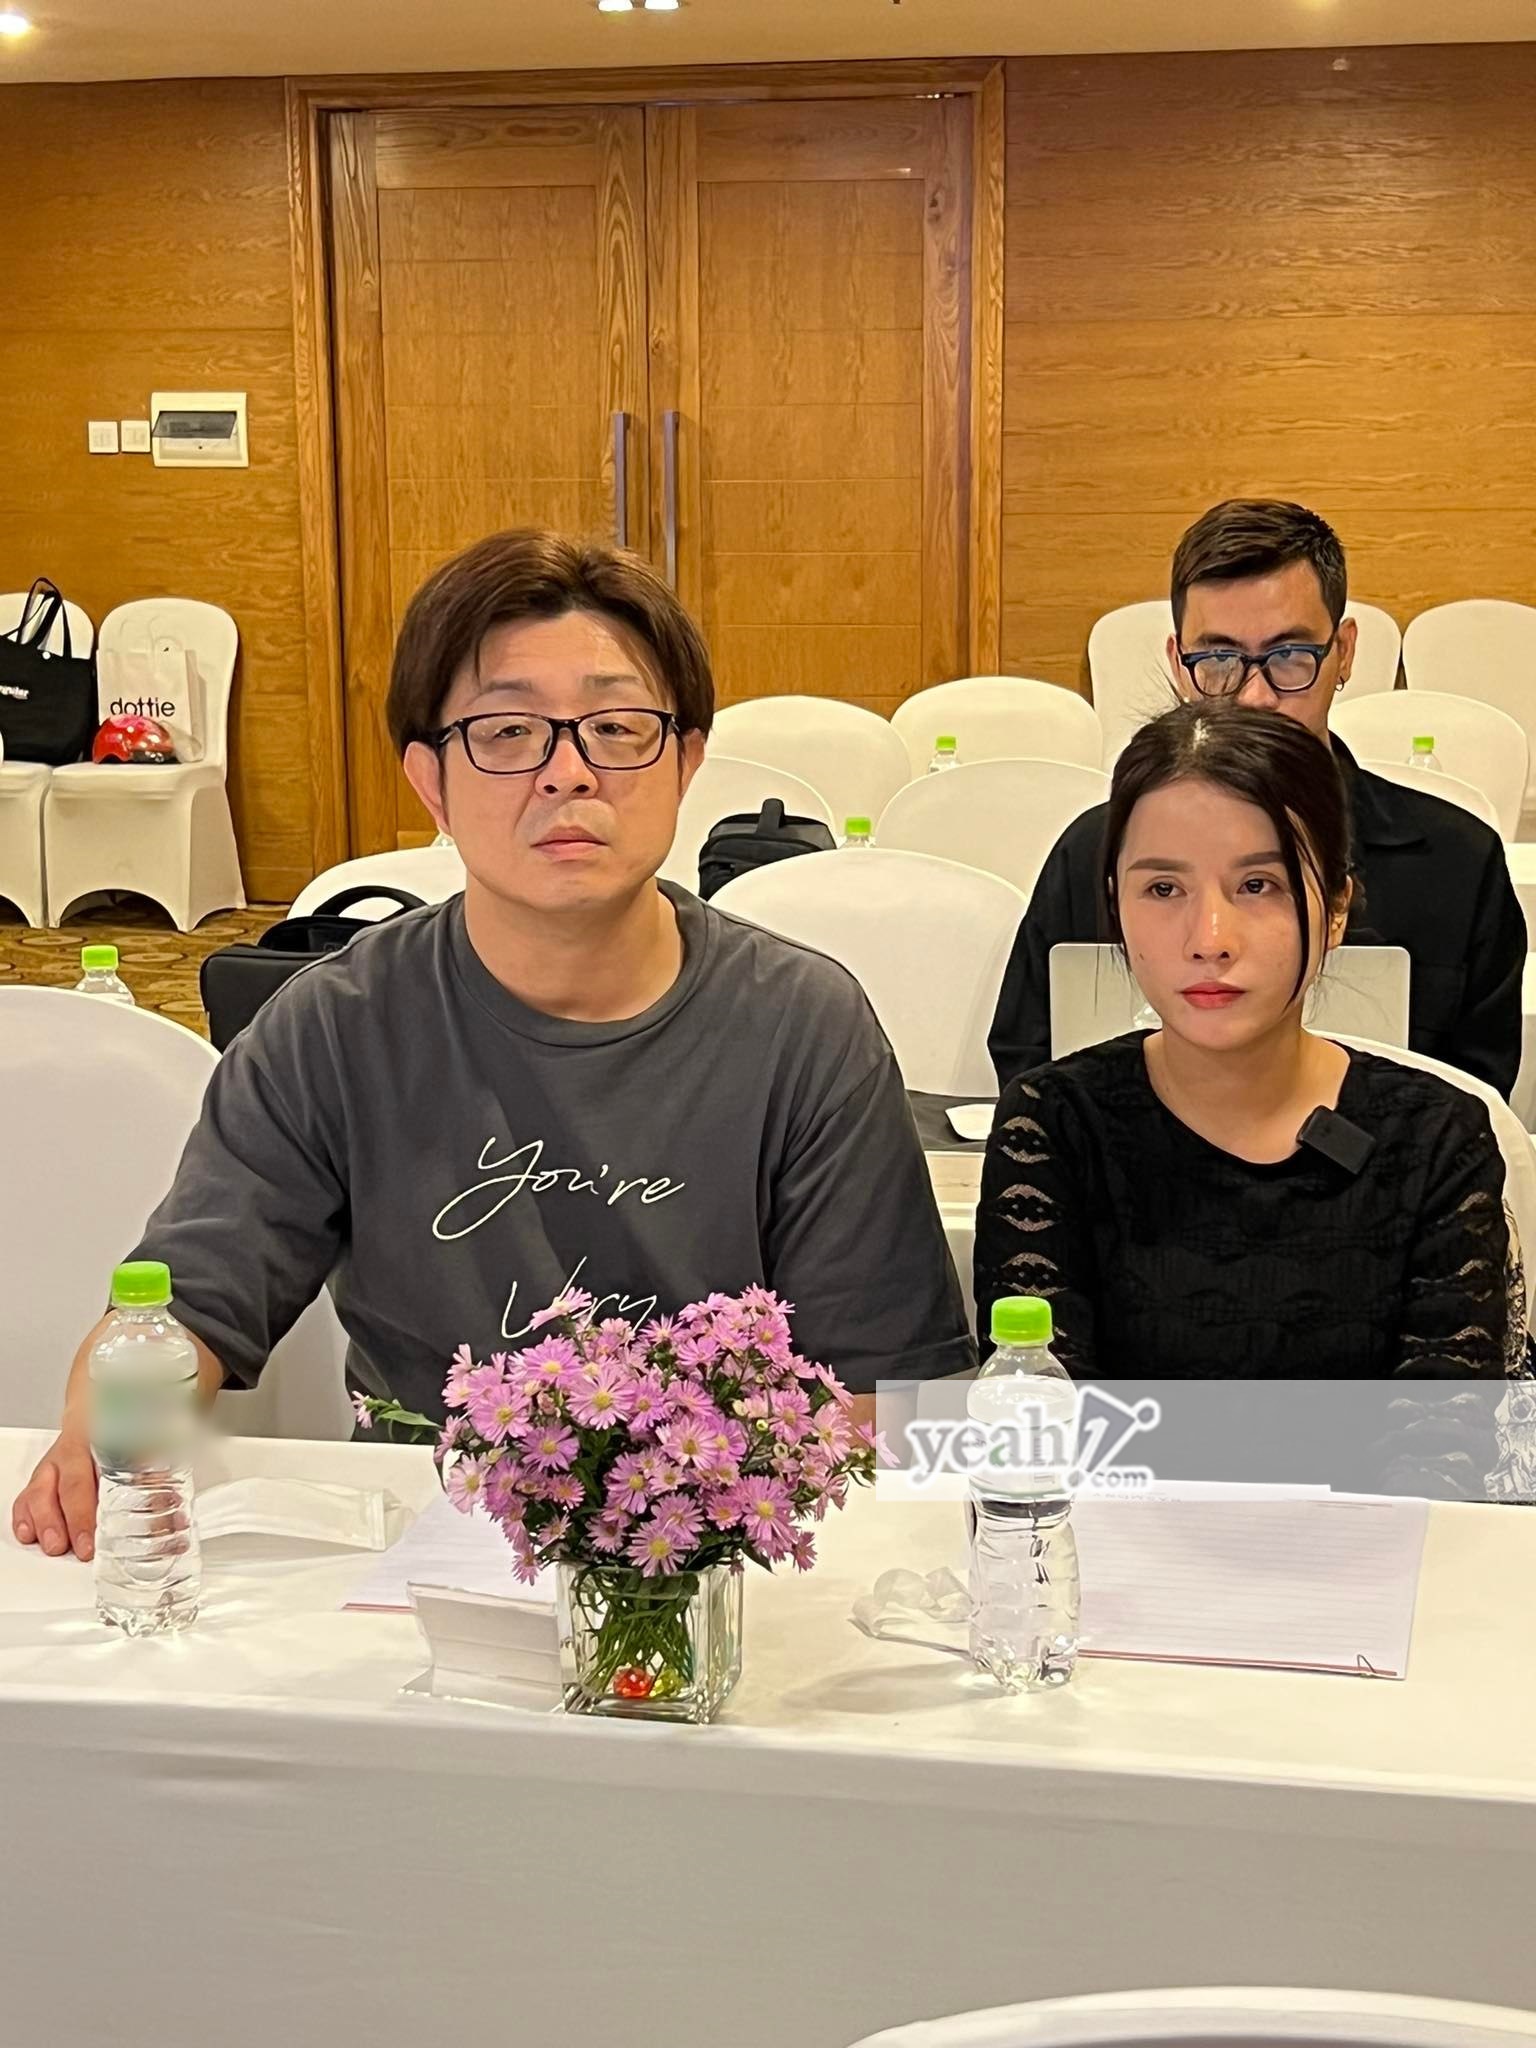 Quỳnh Trần JP bênh vực bà Nhân trong drama với bác sĩ Thịnh: 'Ai cũng có lỗi hết' - ảnh 3